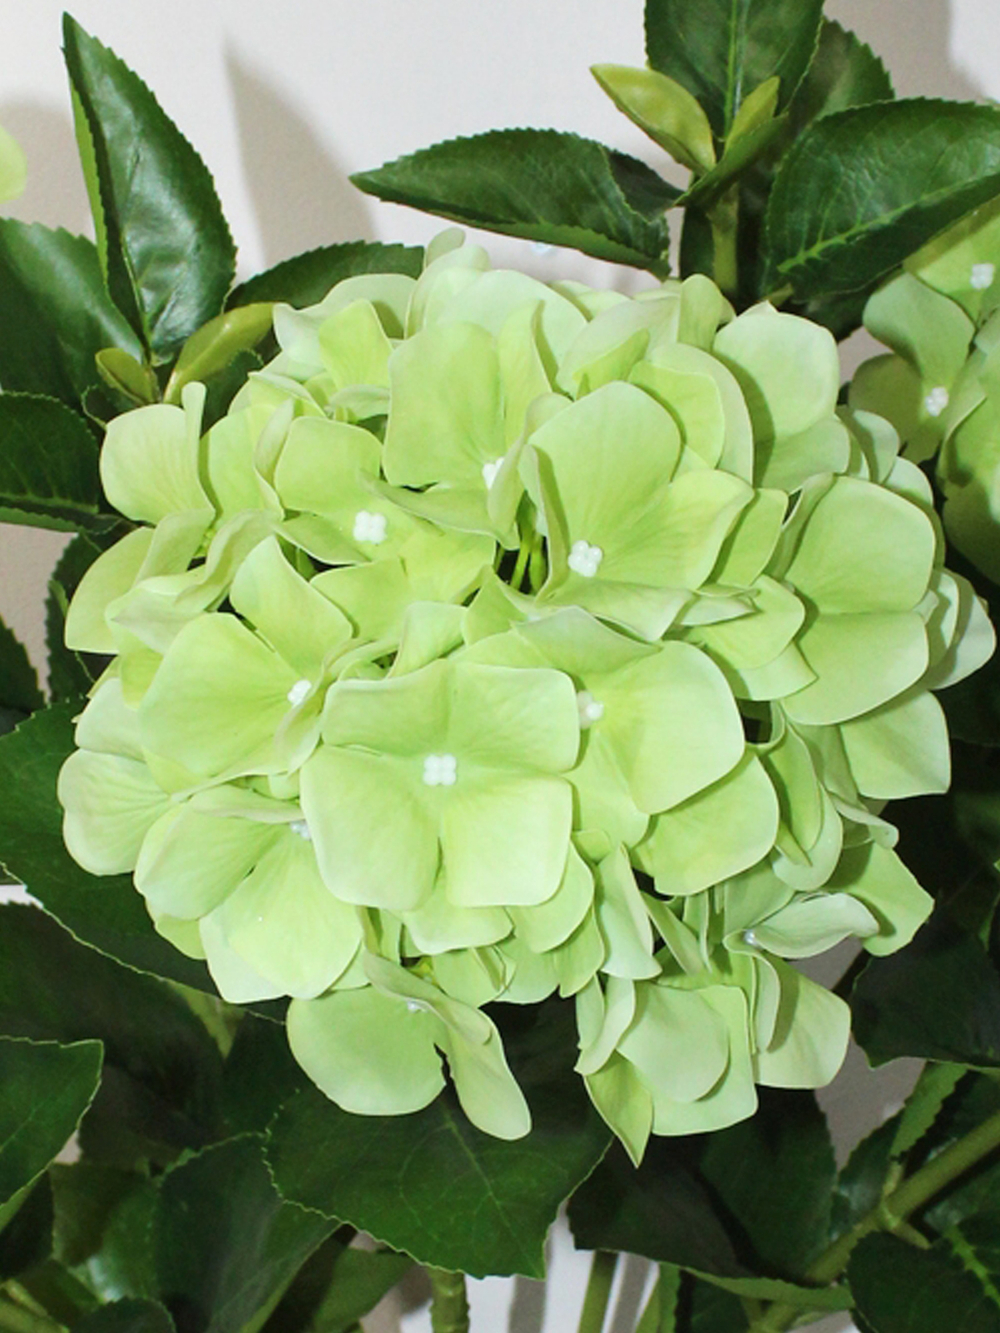 Гортензия искусственная зеленая латекс 70см для вазы